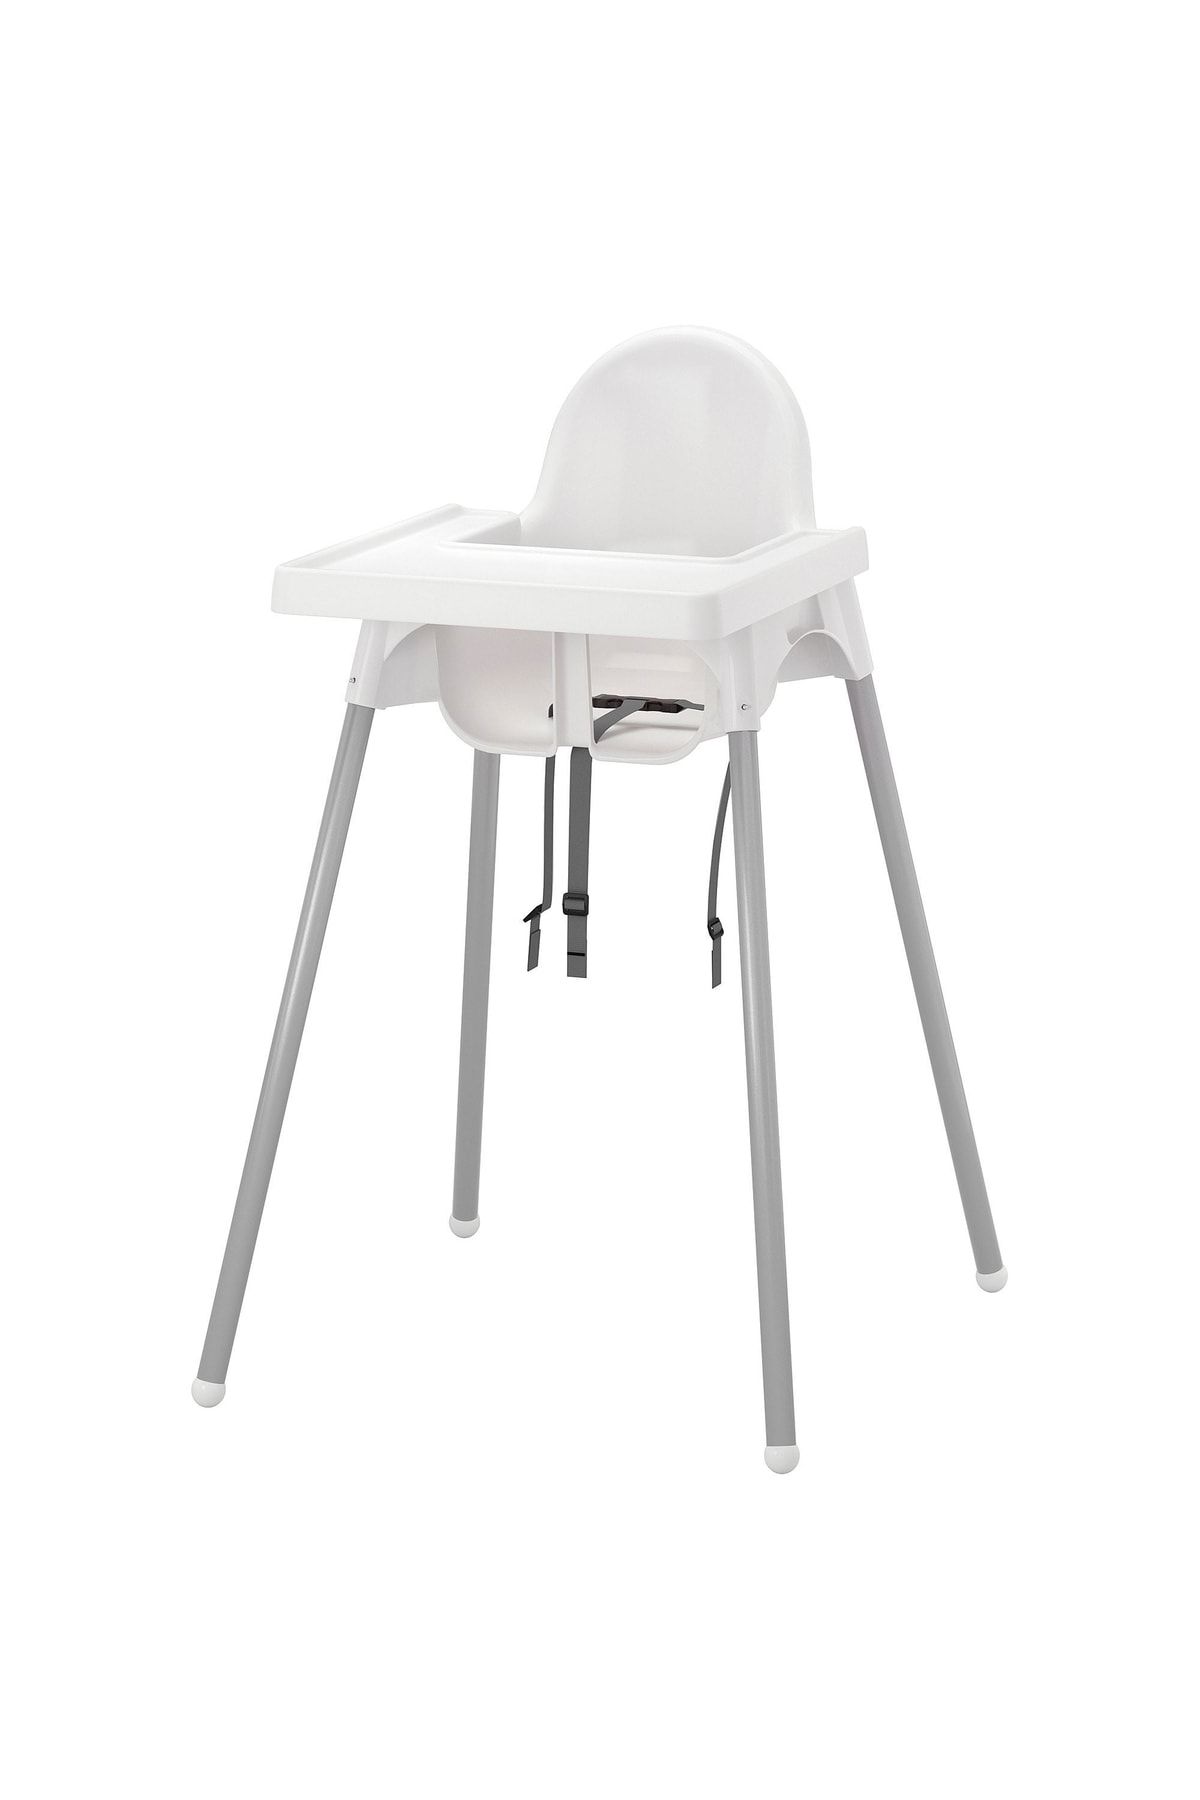 IKEA Antılop Tepsili Mama Sandalyesi Seti + Destekleyici Minderi + Destekleyici Minder Kılıfı